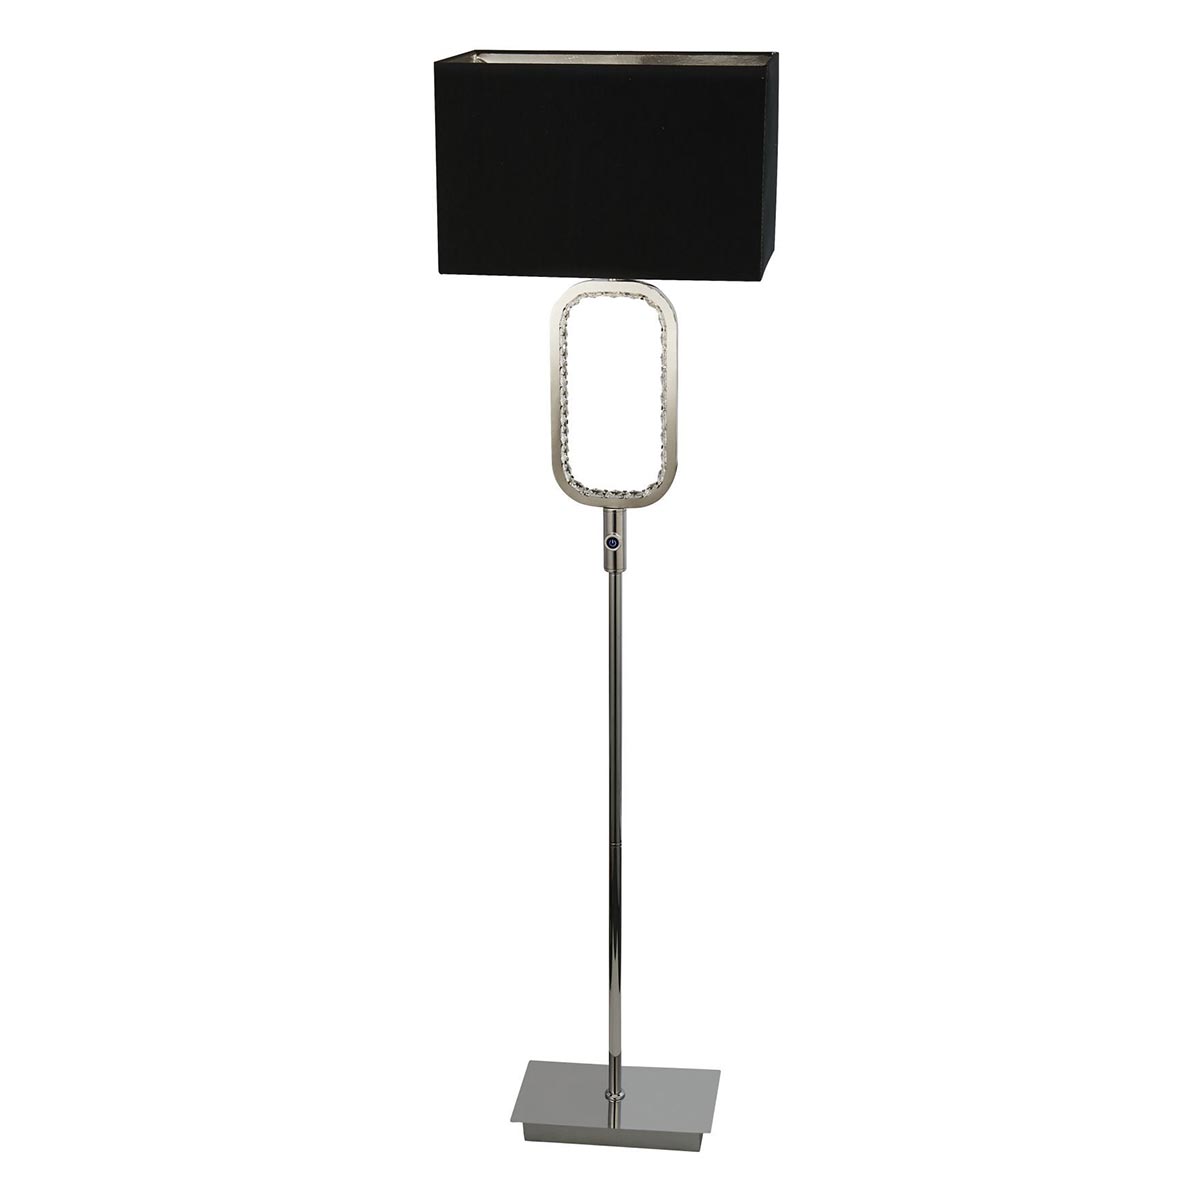 Chrome 1 Light Floor Lamp Crystal Touch Dimmer LED Base Black Shade